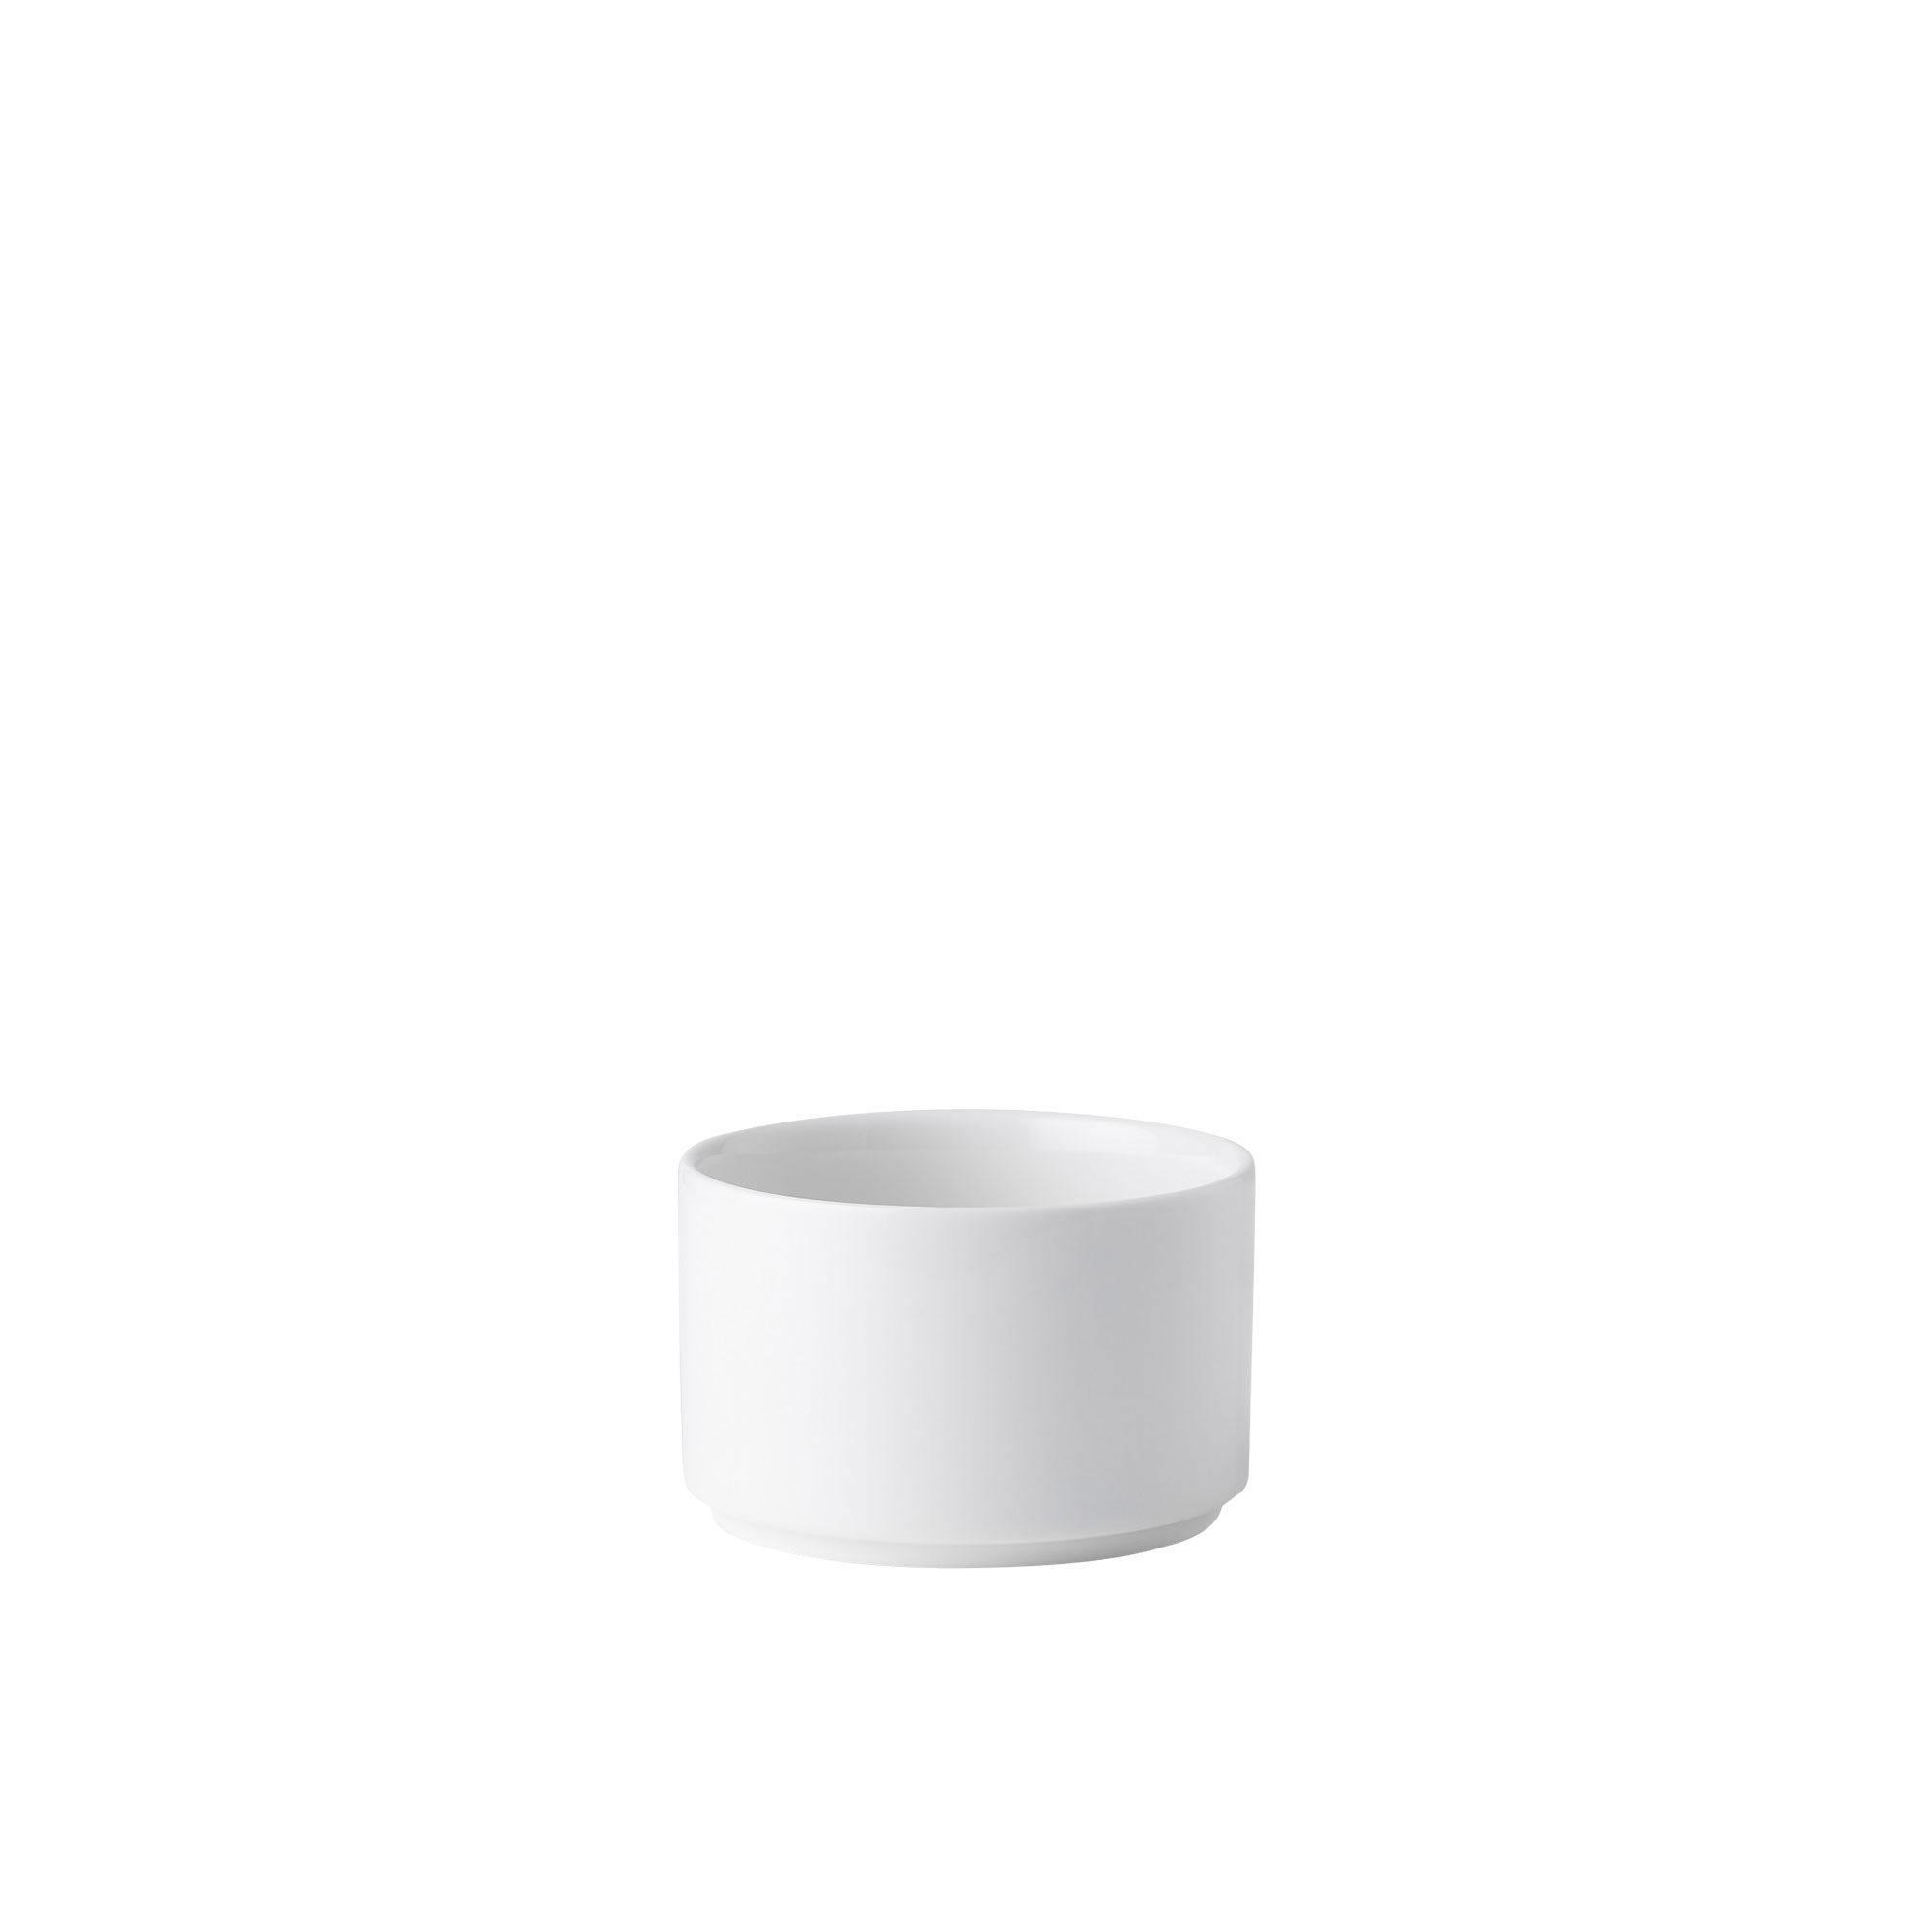 Noritake Stax White Mini Bowl Set of 4 Image 2